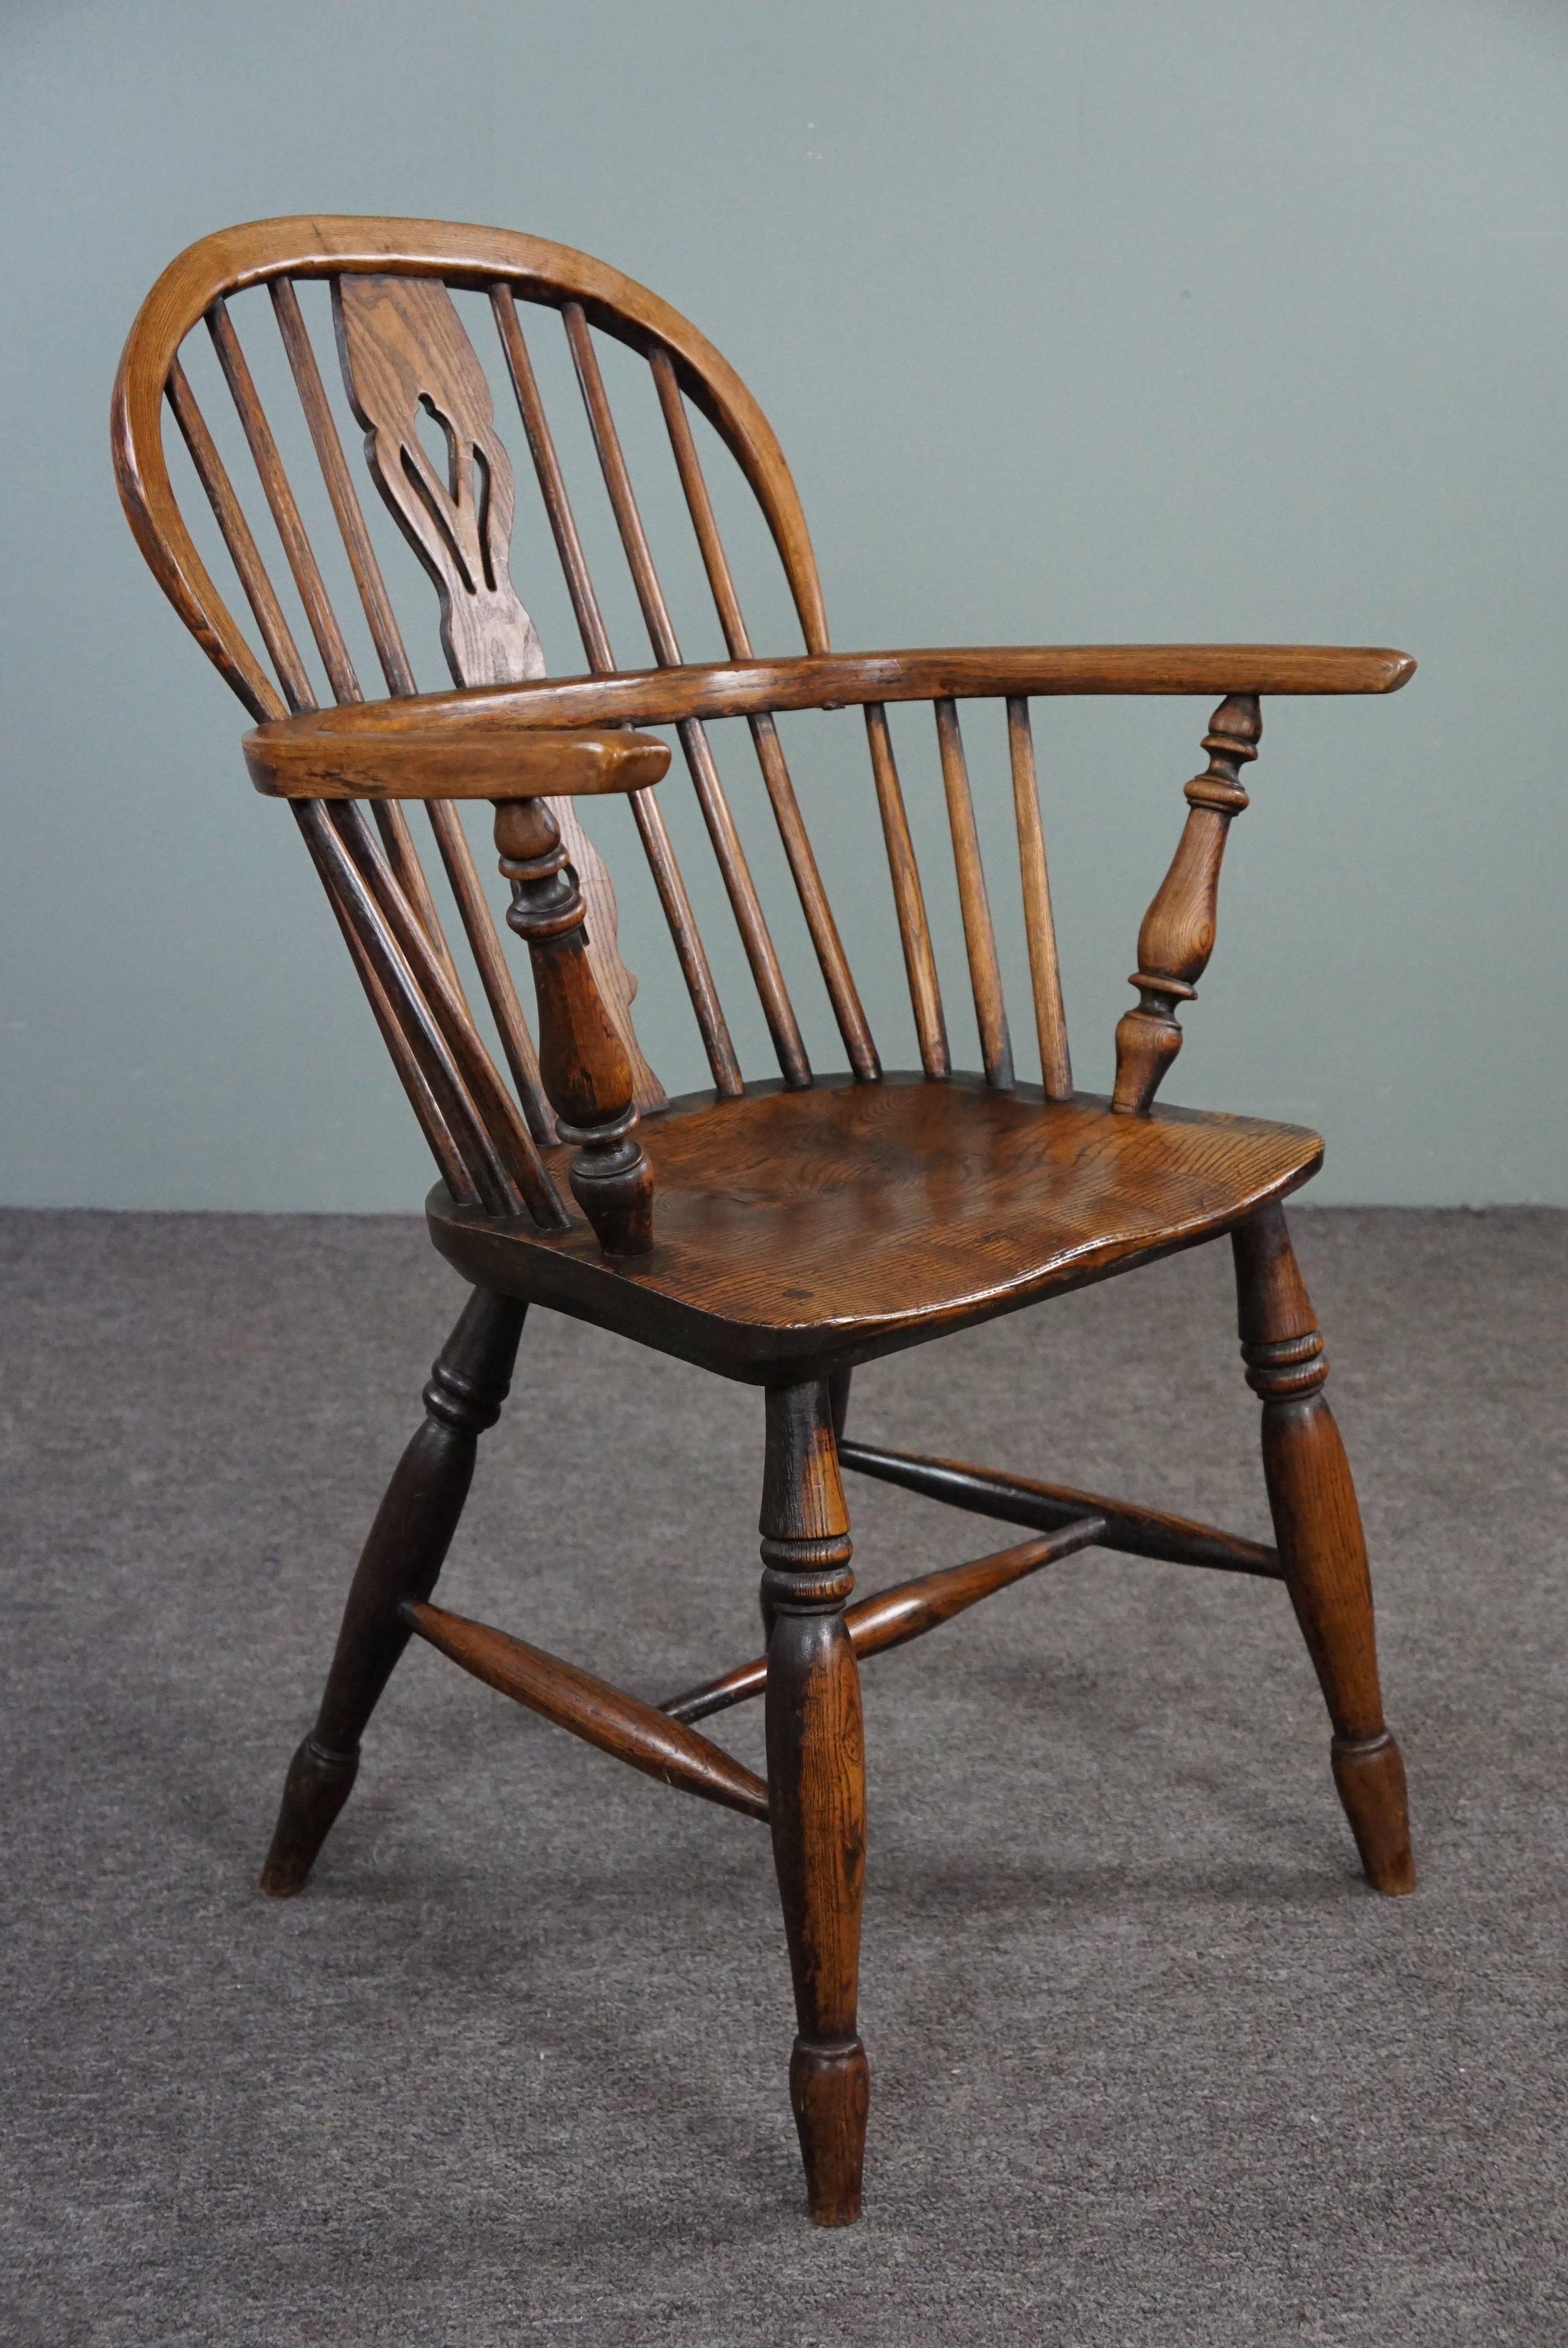 Nous vous proposons ce magnifique fauteuil ancien en bois massif à la patine étonnante.

Cette très belle chaise Windsor anglaise ancienne à dossier bas du début du XVIIIe siècle a un dossier à barreaux et une assise en bois massif épais